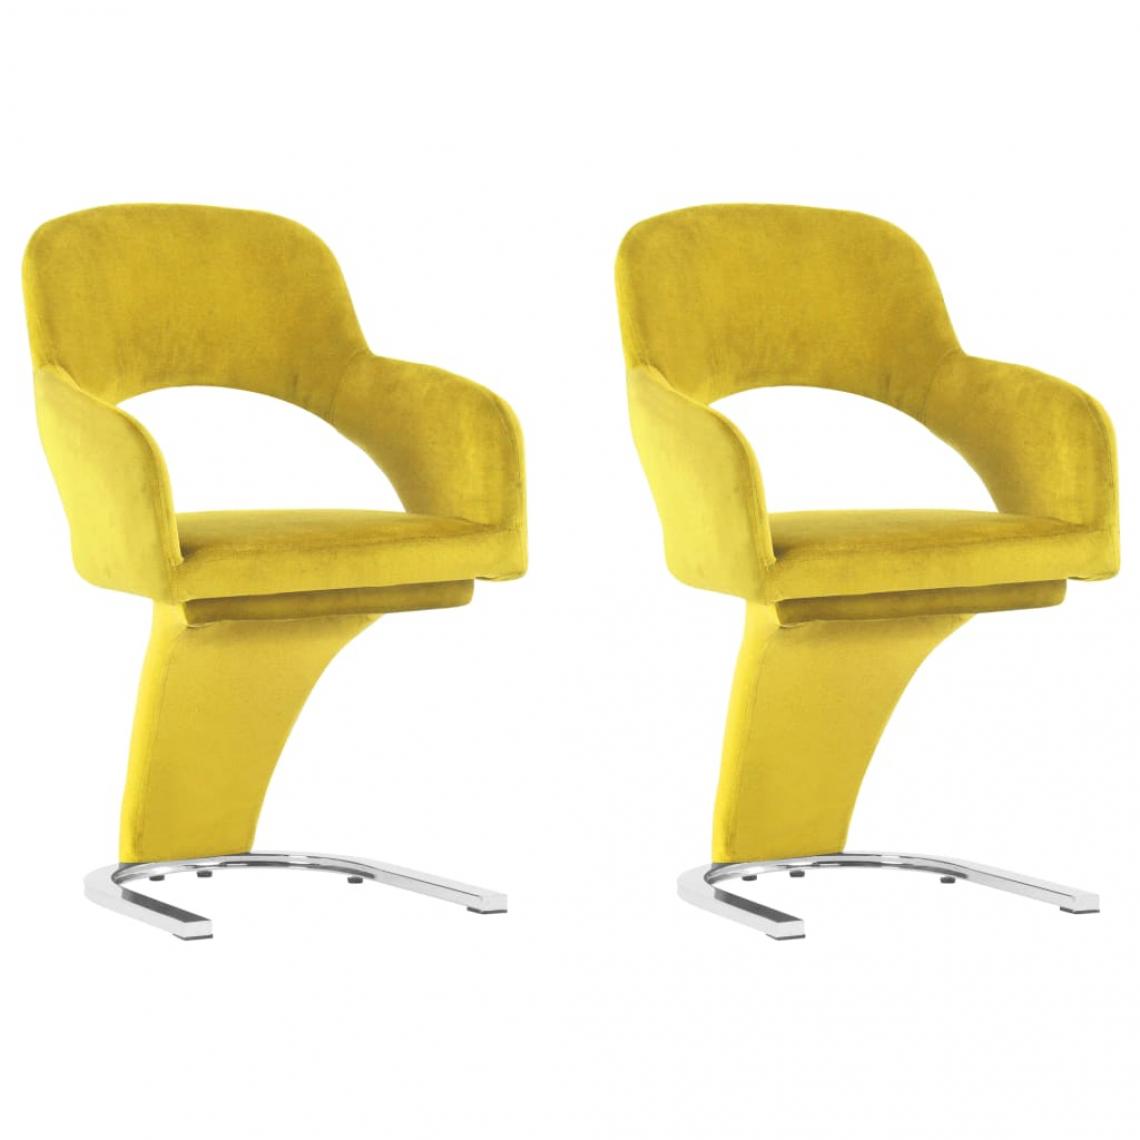 Decoshop26 - Lot de 2 chaises de salle à manger cuisine design moderne velours jaune CDS020660 - Chaises